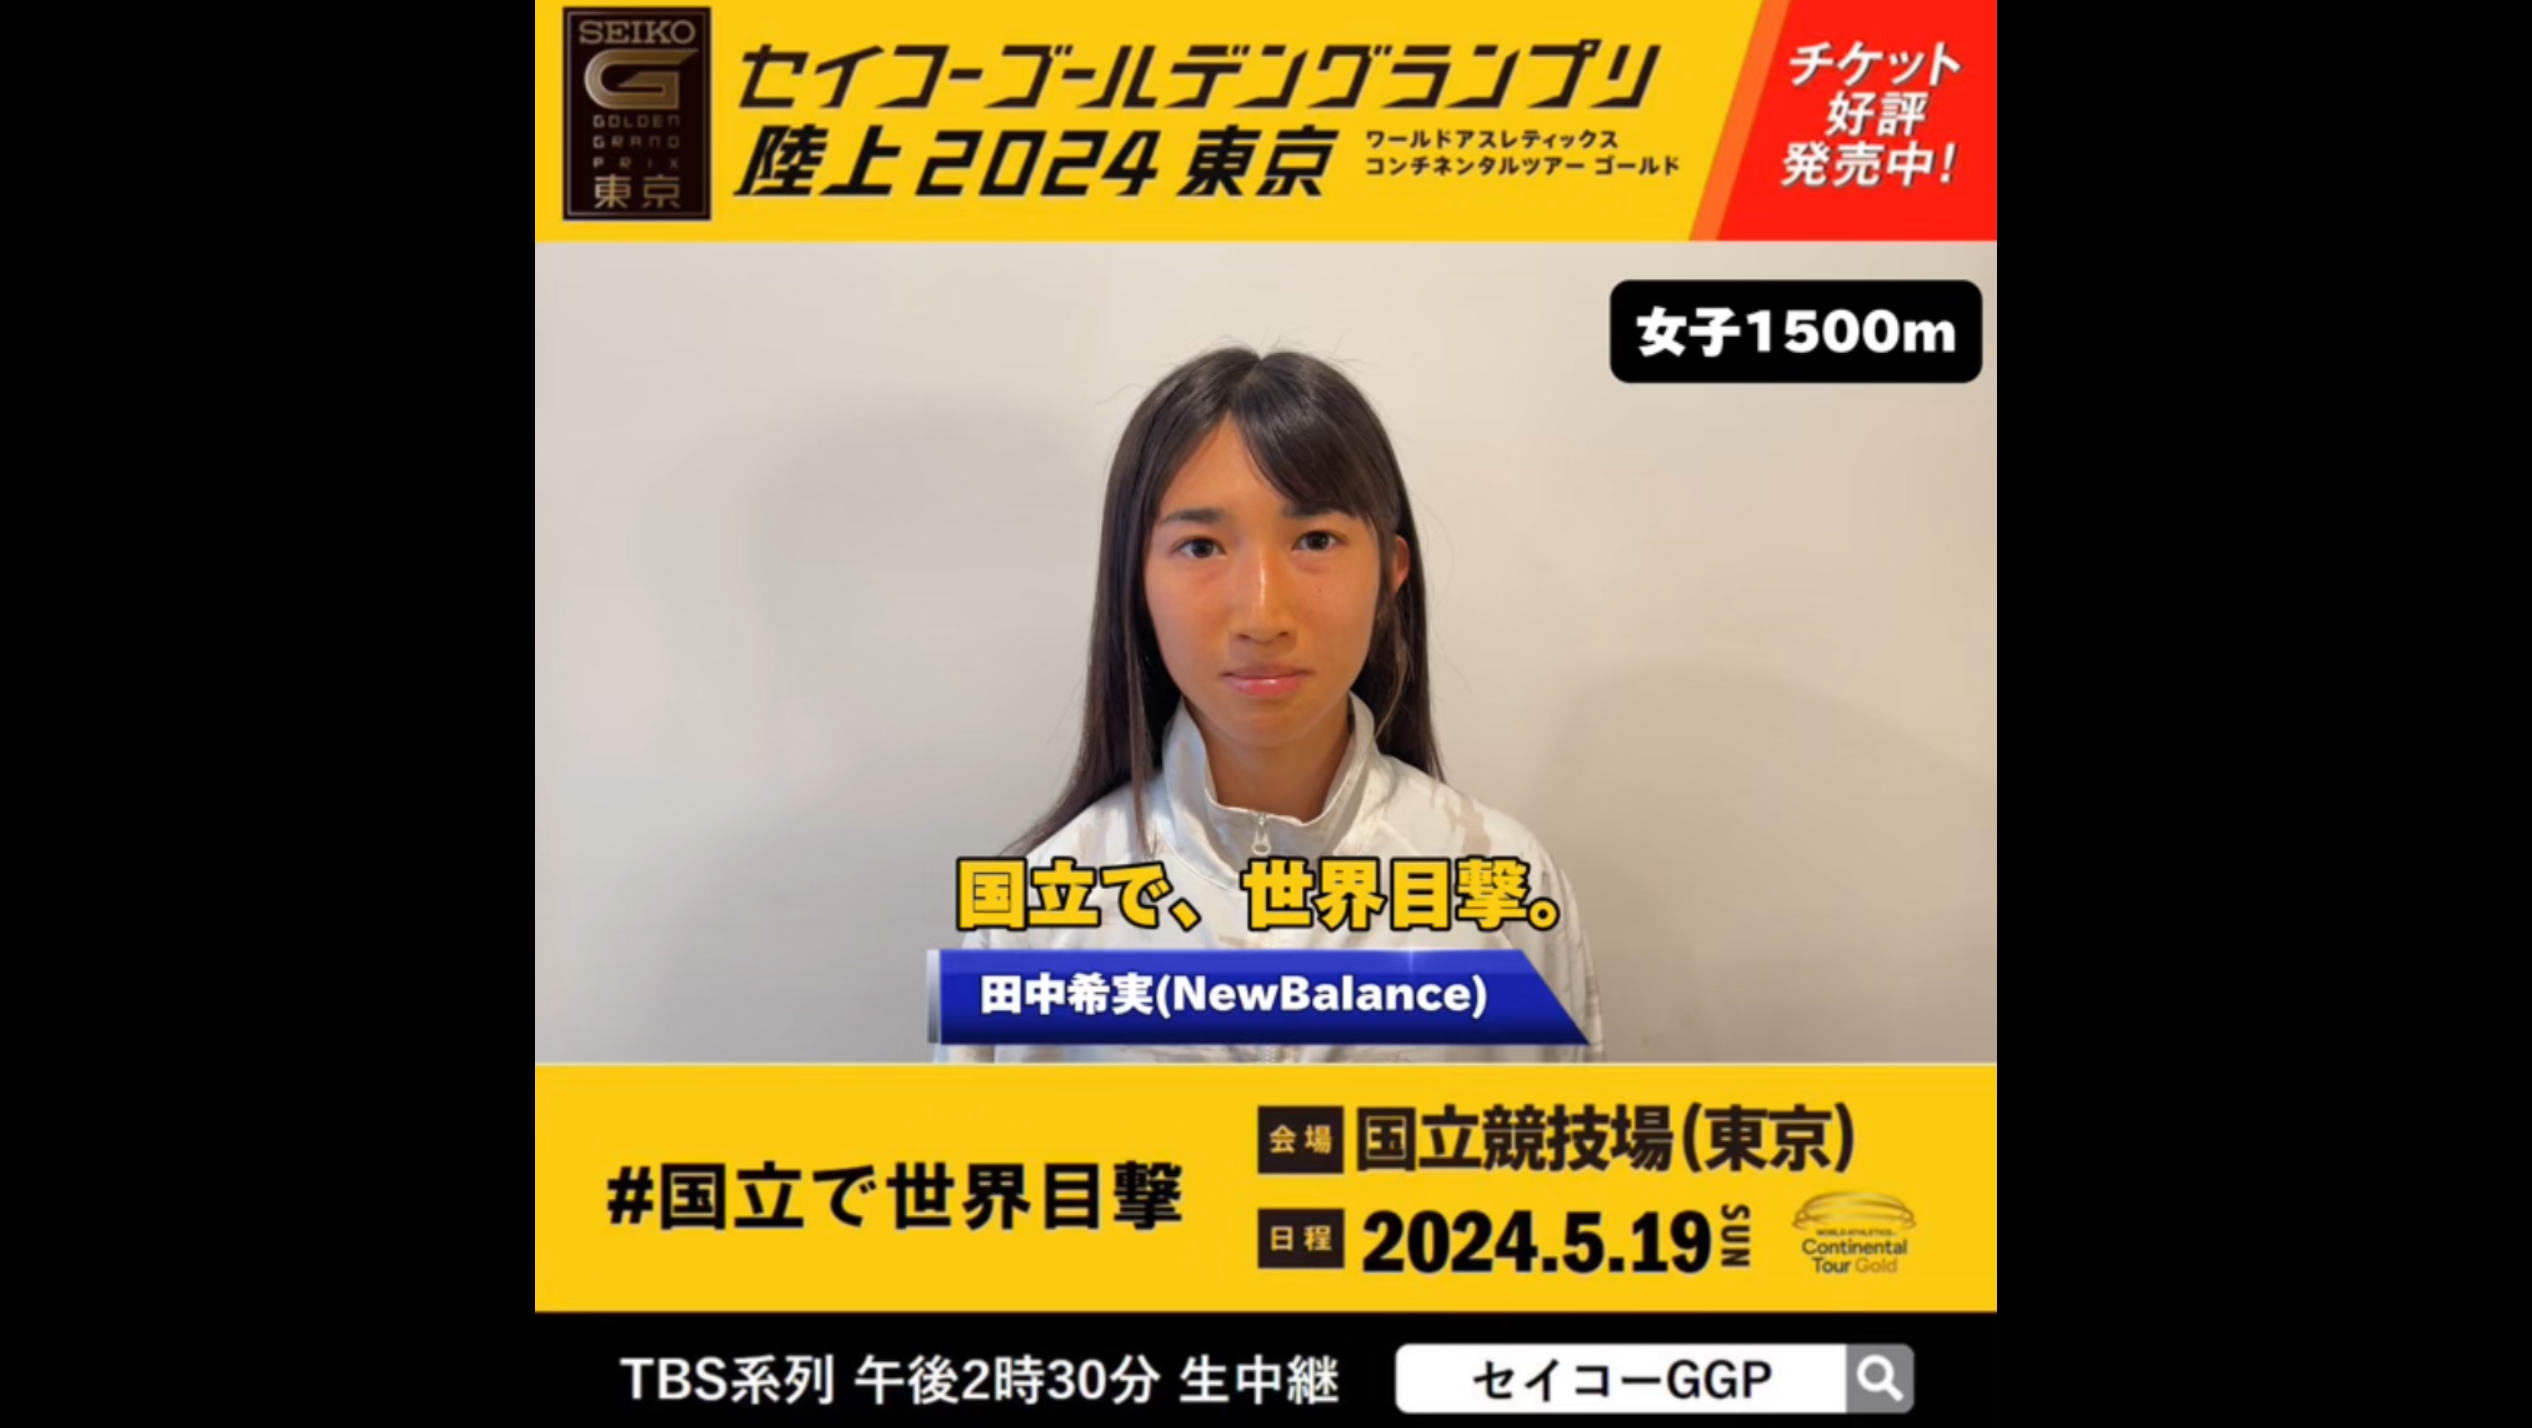 【セイコーGGP】女子1500m出場 田中希実(NewBalance)メッセージ